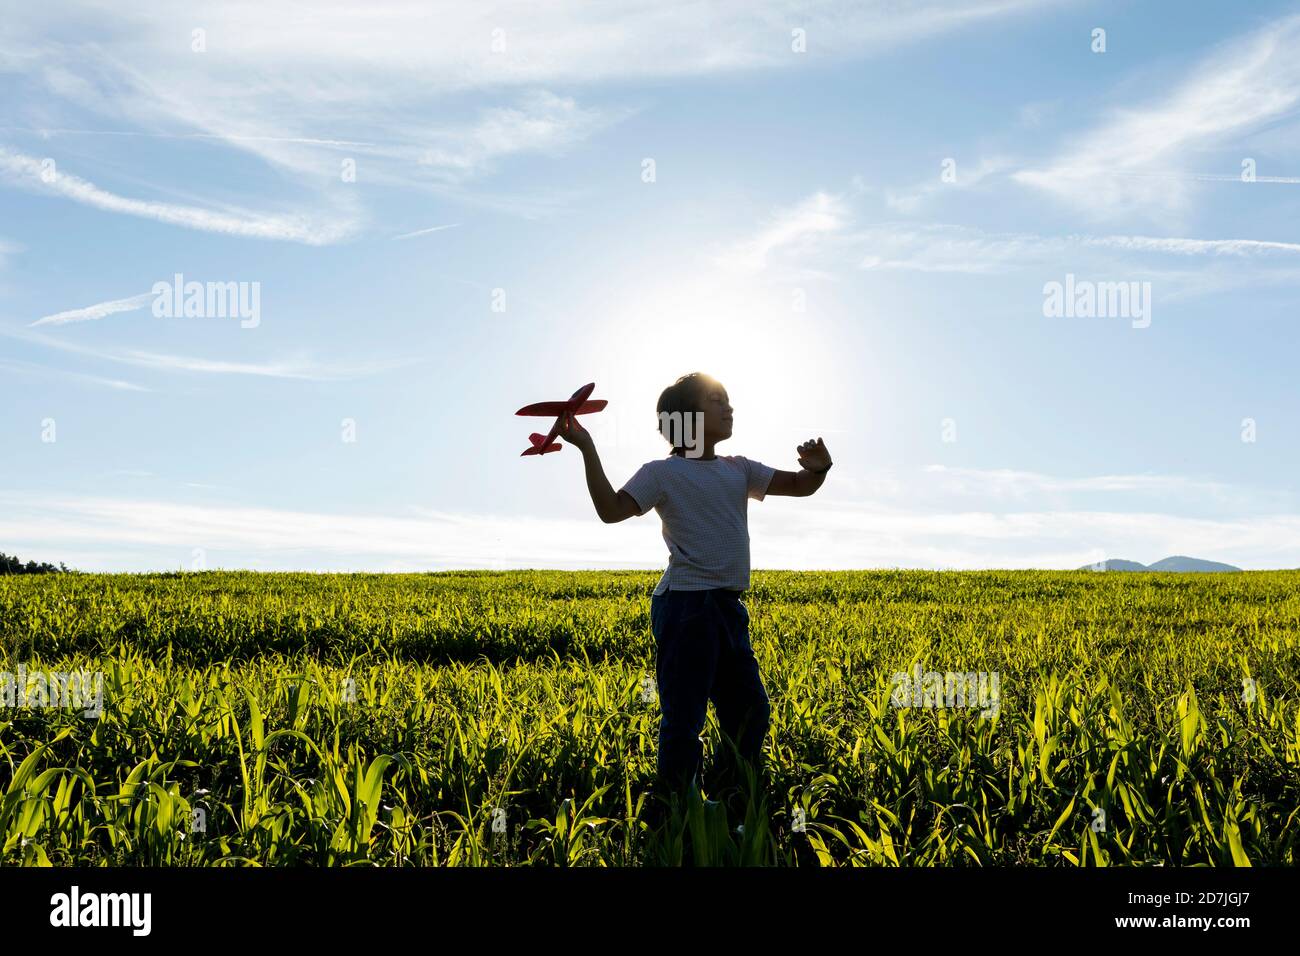 Silhouette de garçon jouant avec un jouet d'avion contre le ciel clair Banque D'Images